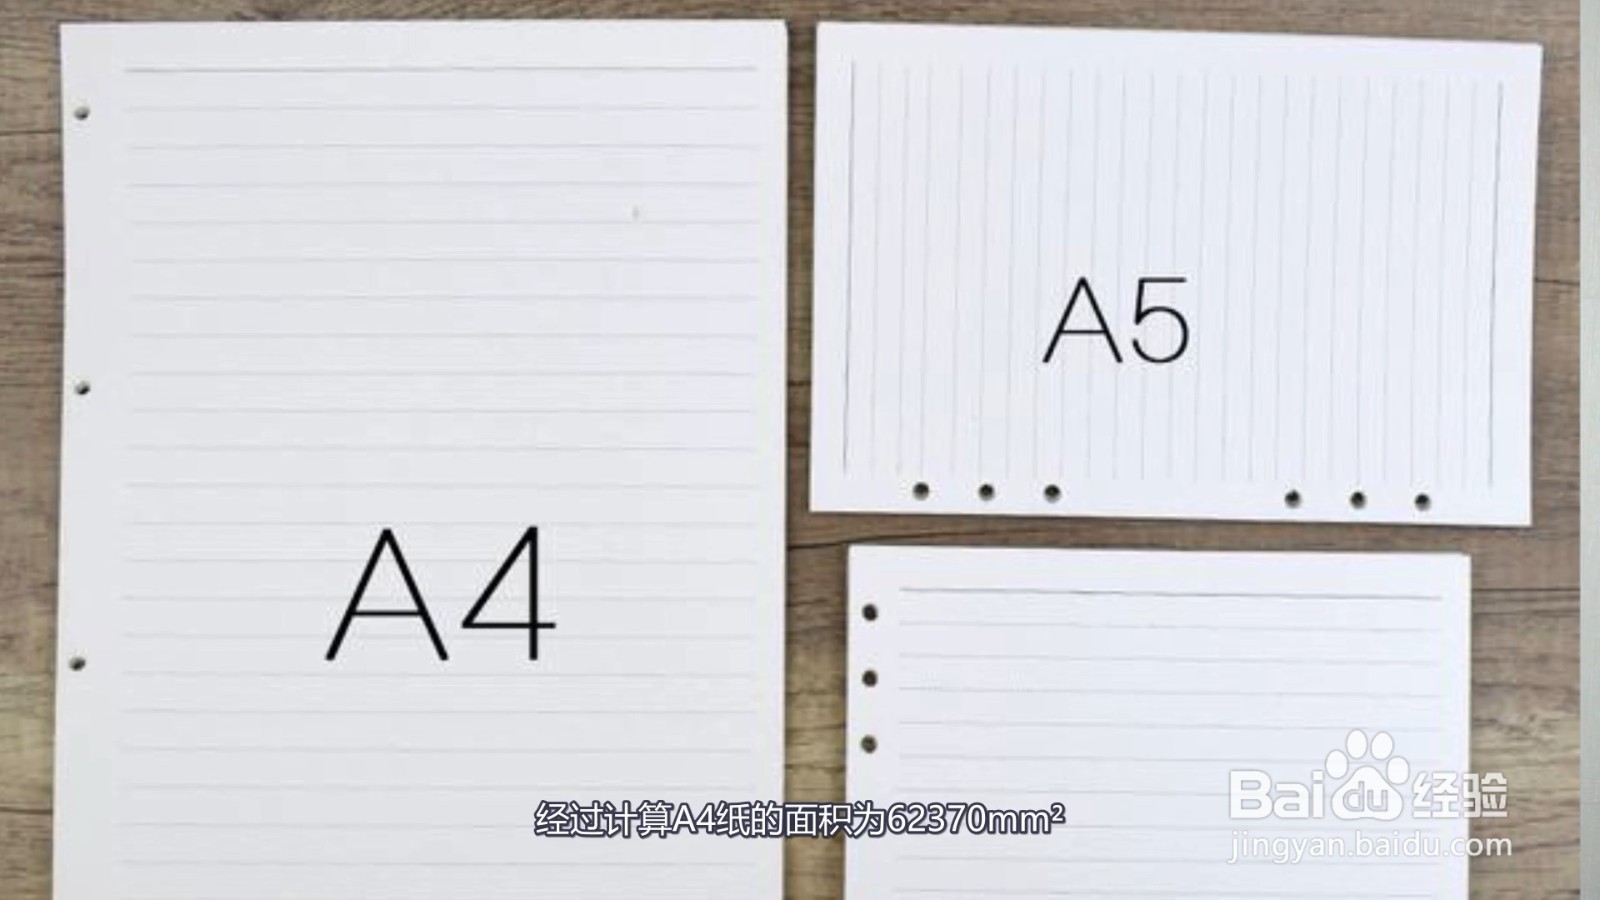 b5和a4纸大小图片对比图片